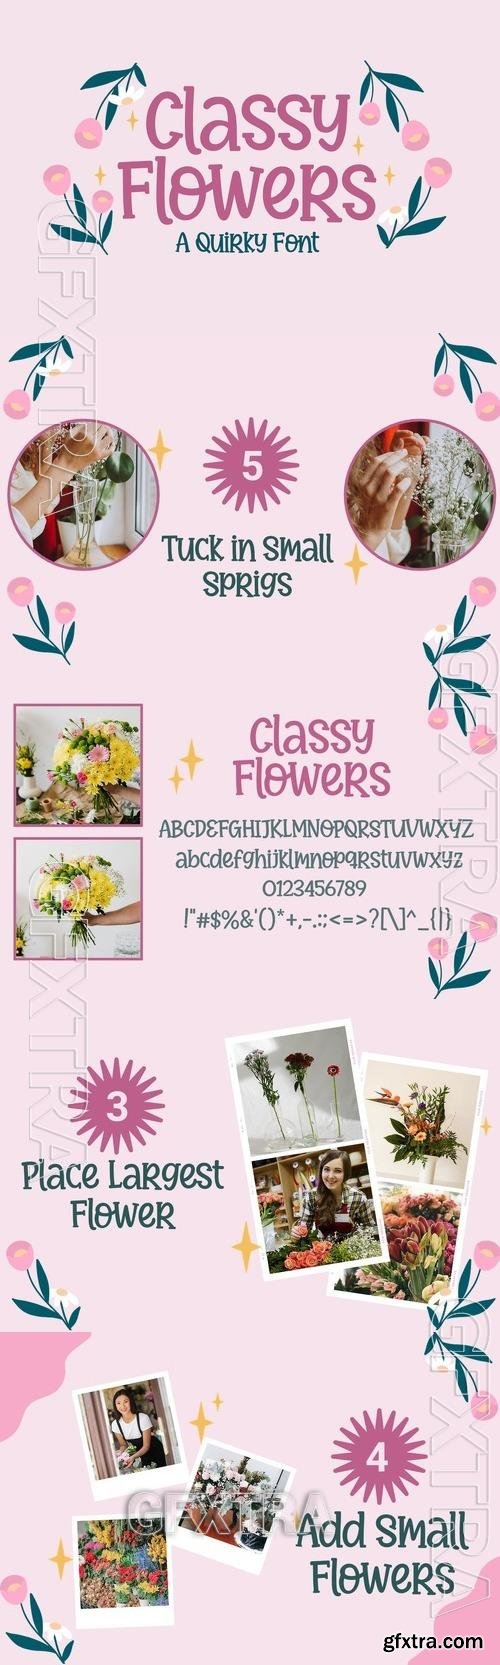 Classy Flowers 7GZNTGZ